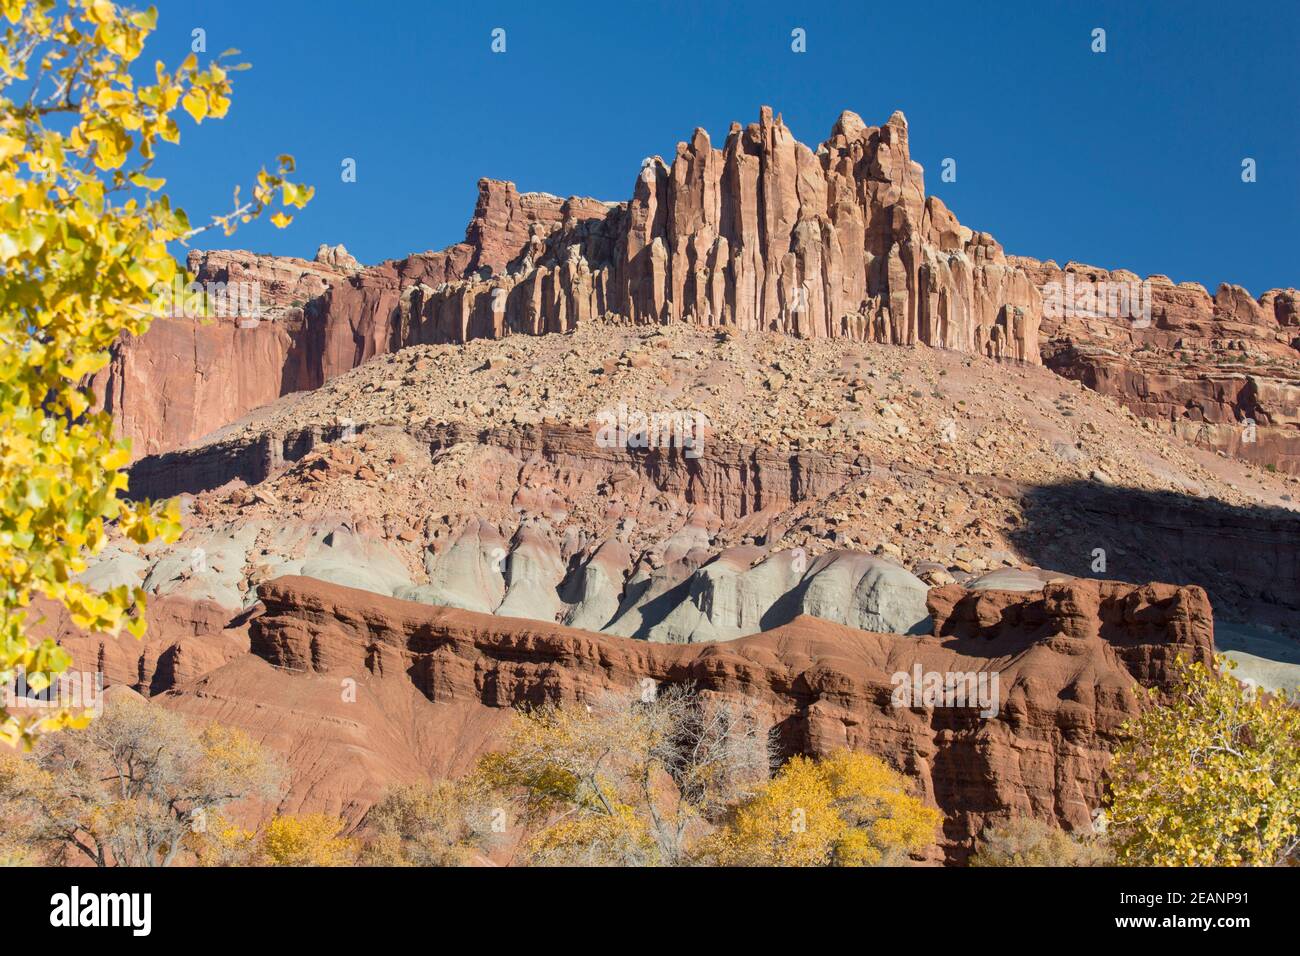 The Castle, ein ikonischer Sandsteingipfel, der Teil der Waterpocket Fold ist, Herbst, Fruita, Capitol Reef National Park, Utah, Vereinigte Staaten von Amerika Stockfoto